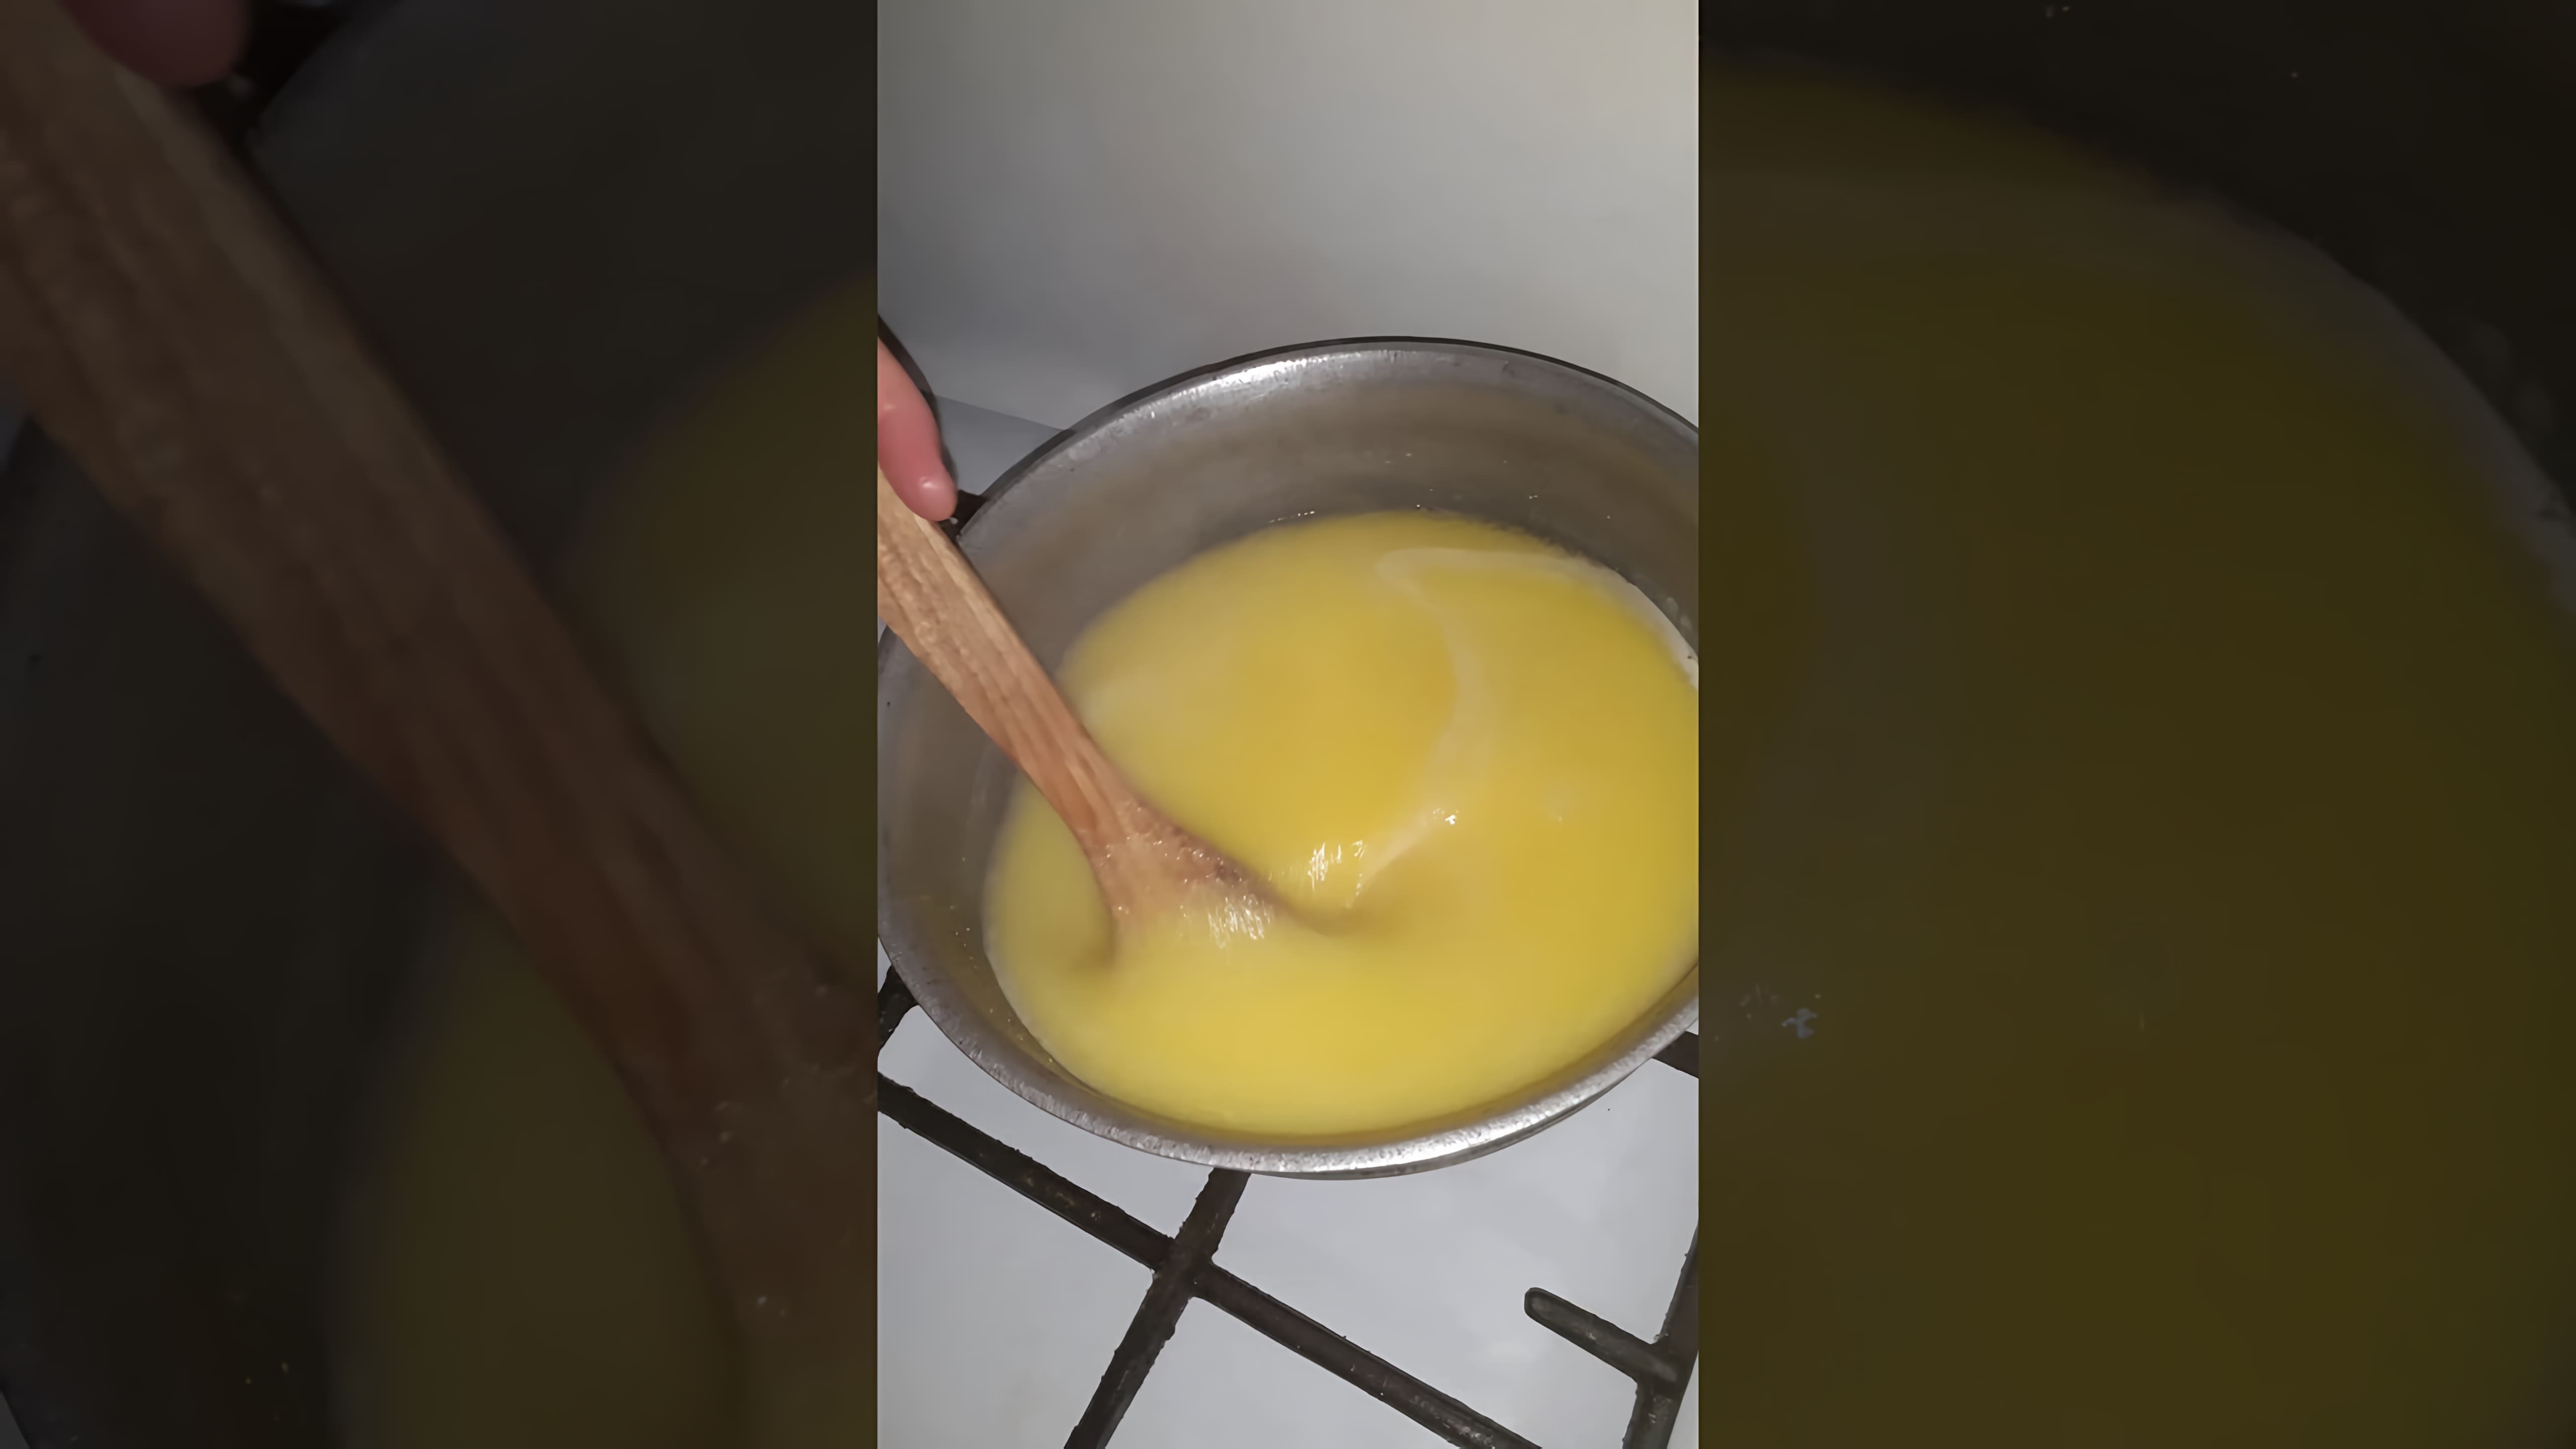 Кабардинская Паста - это видео-ролик, который представляет собой рецепт приготовления кабардинской пасты